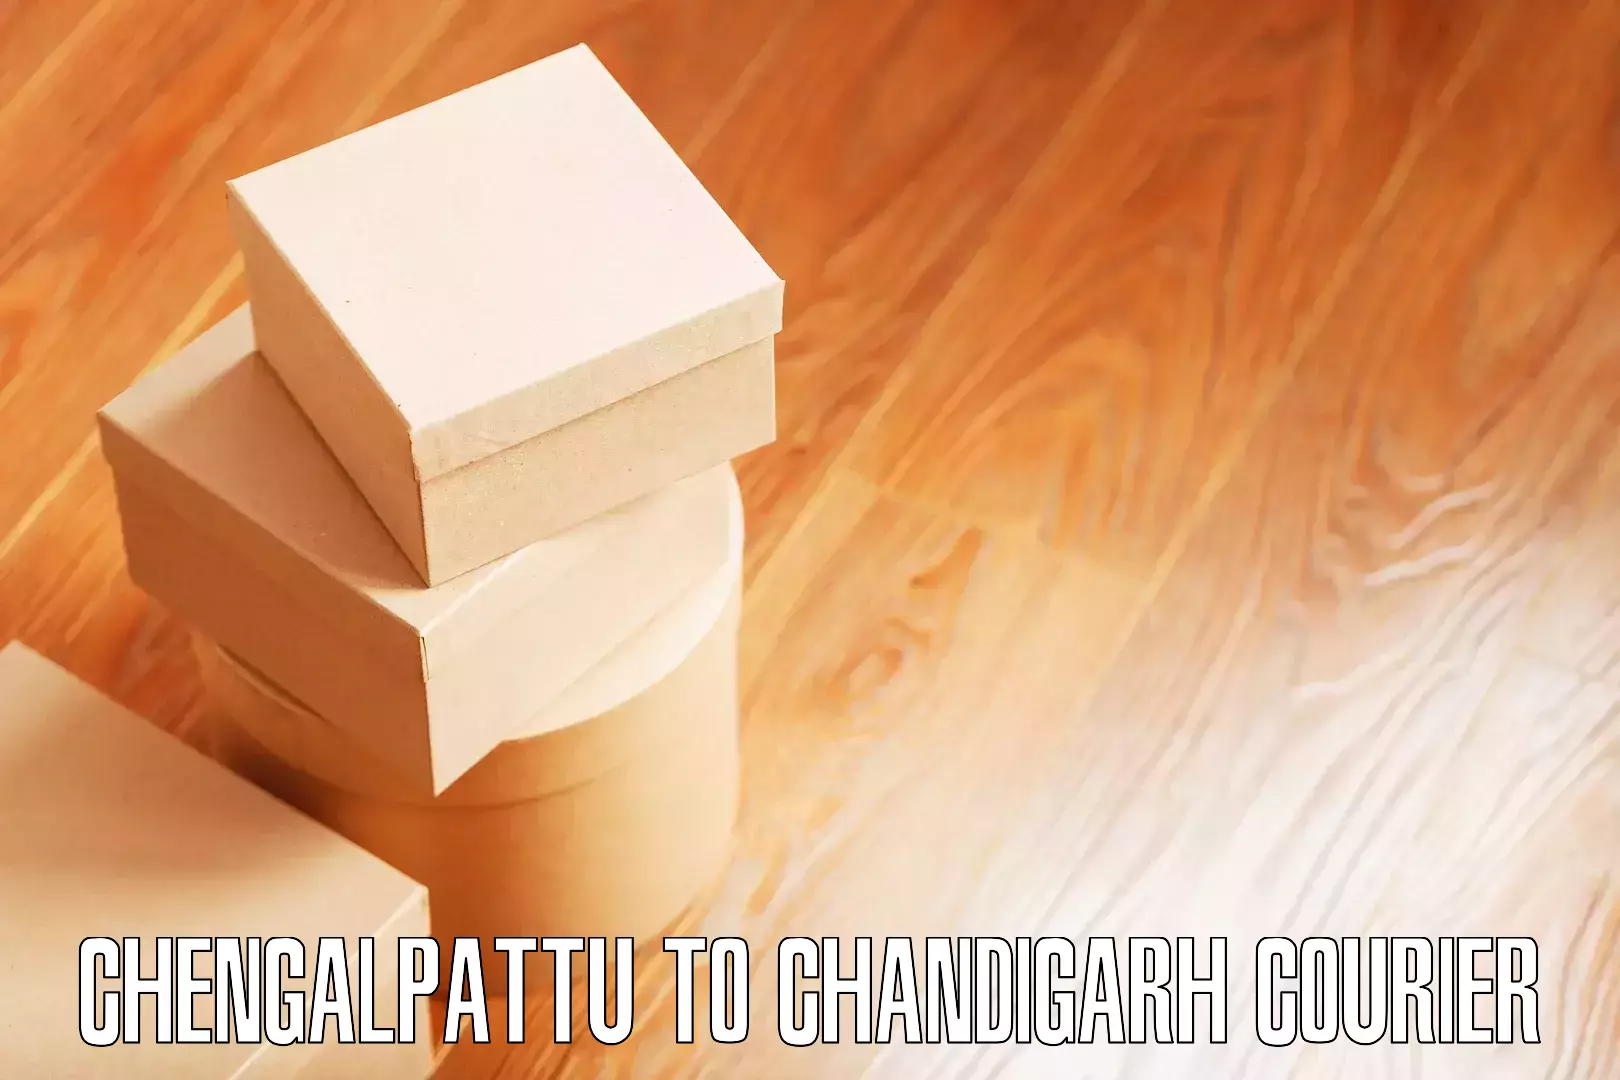 Furniture moving strategies in Chengalpattu to Chandigarh